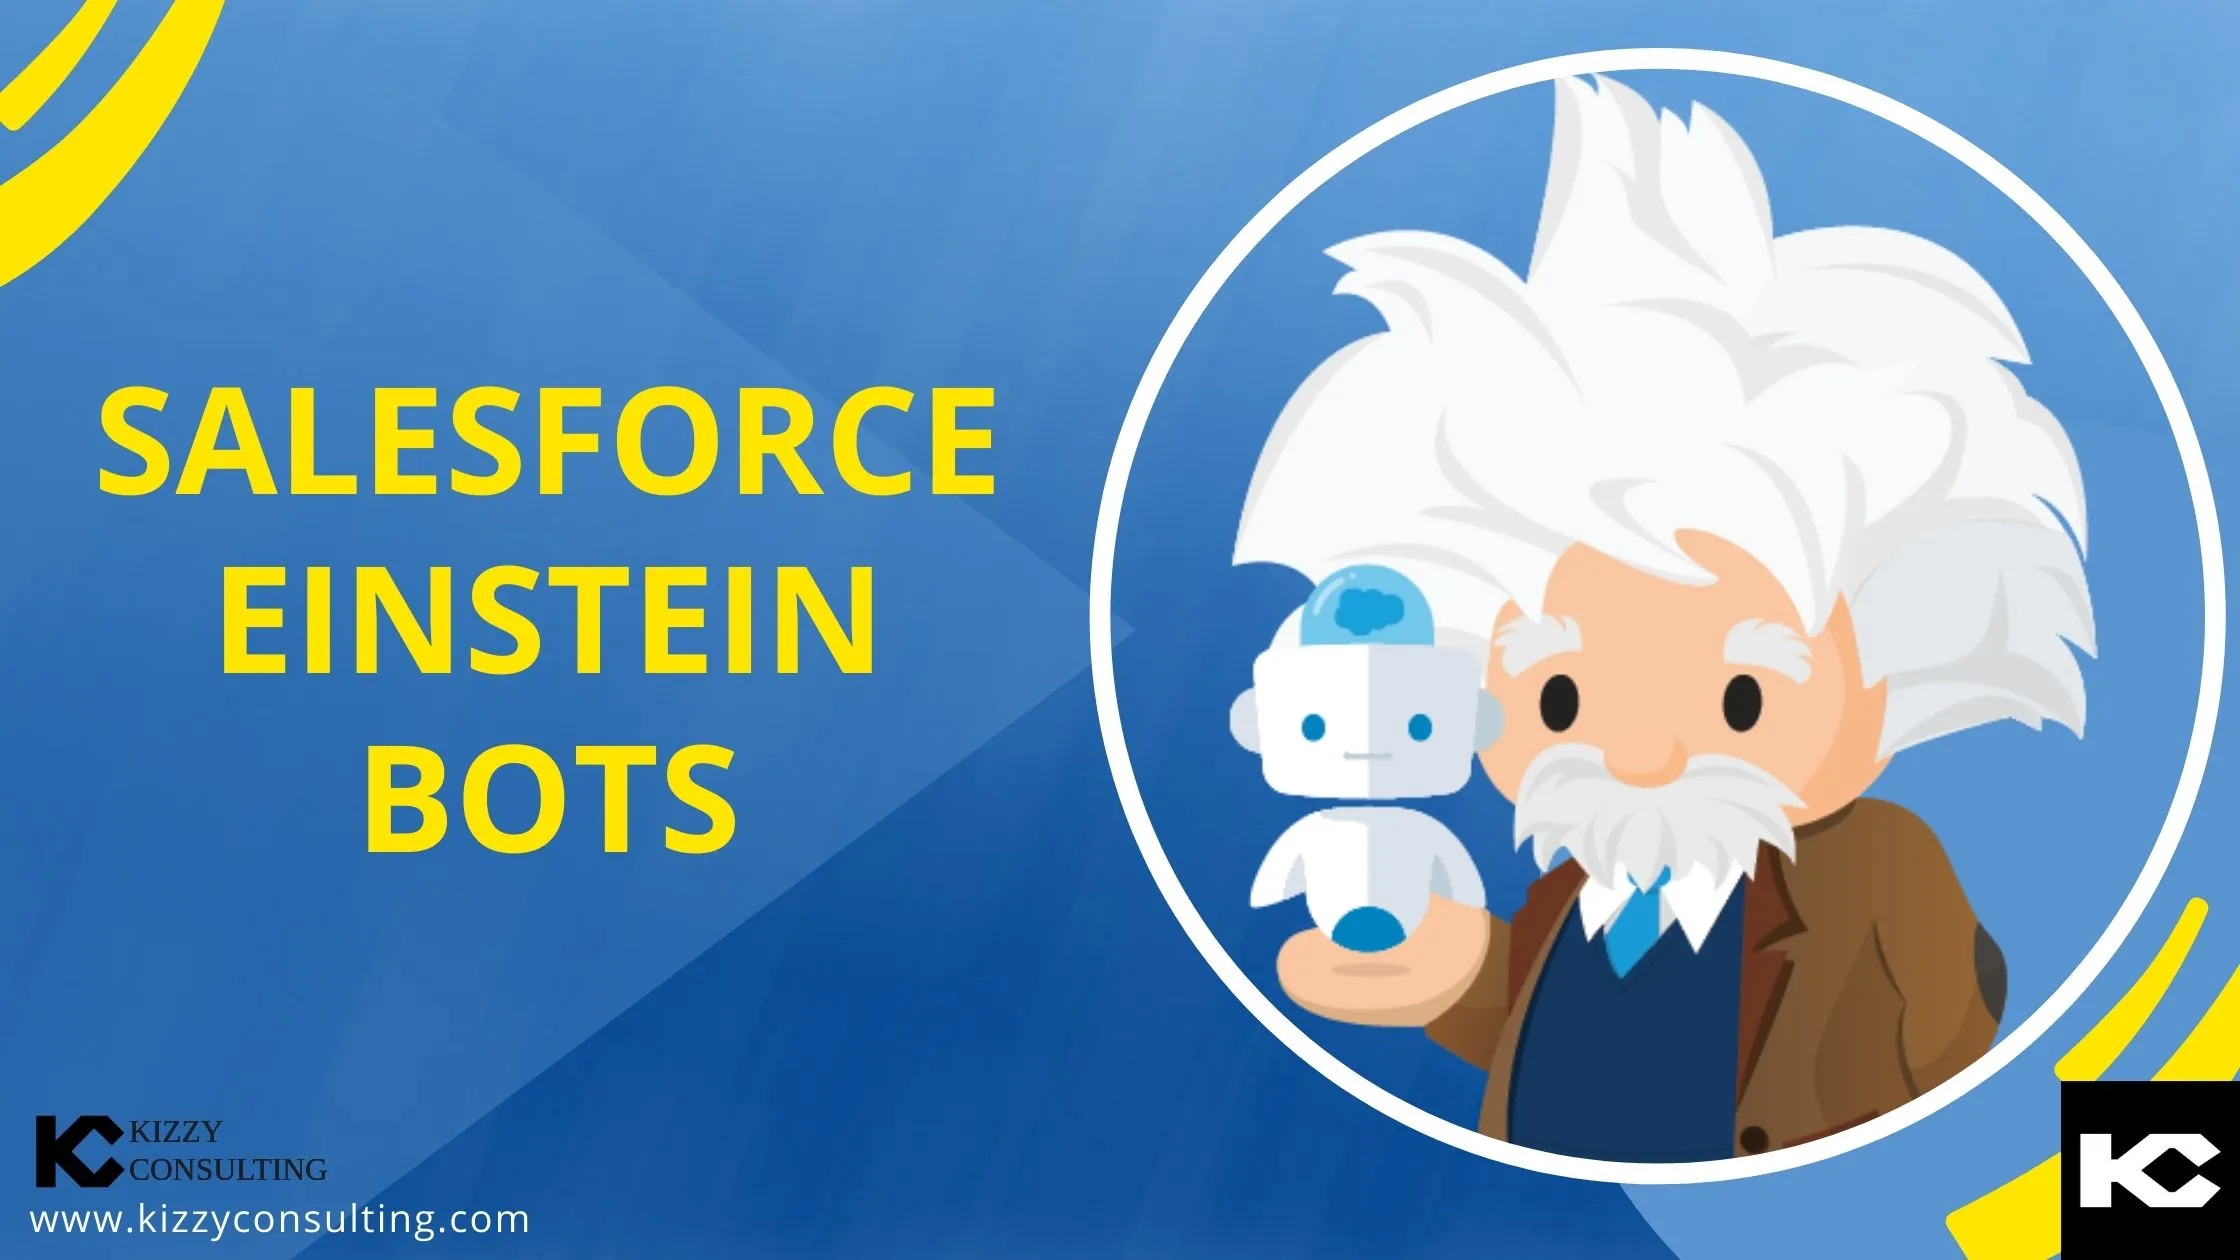 Salesforce Einstein Bots(Kizzy Consulting-Top Salesforce Partner)